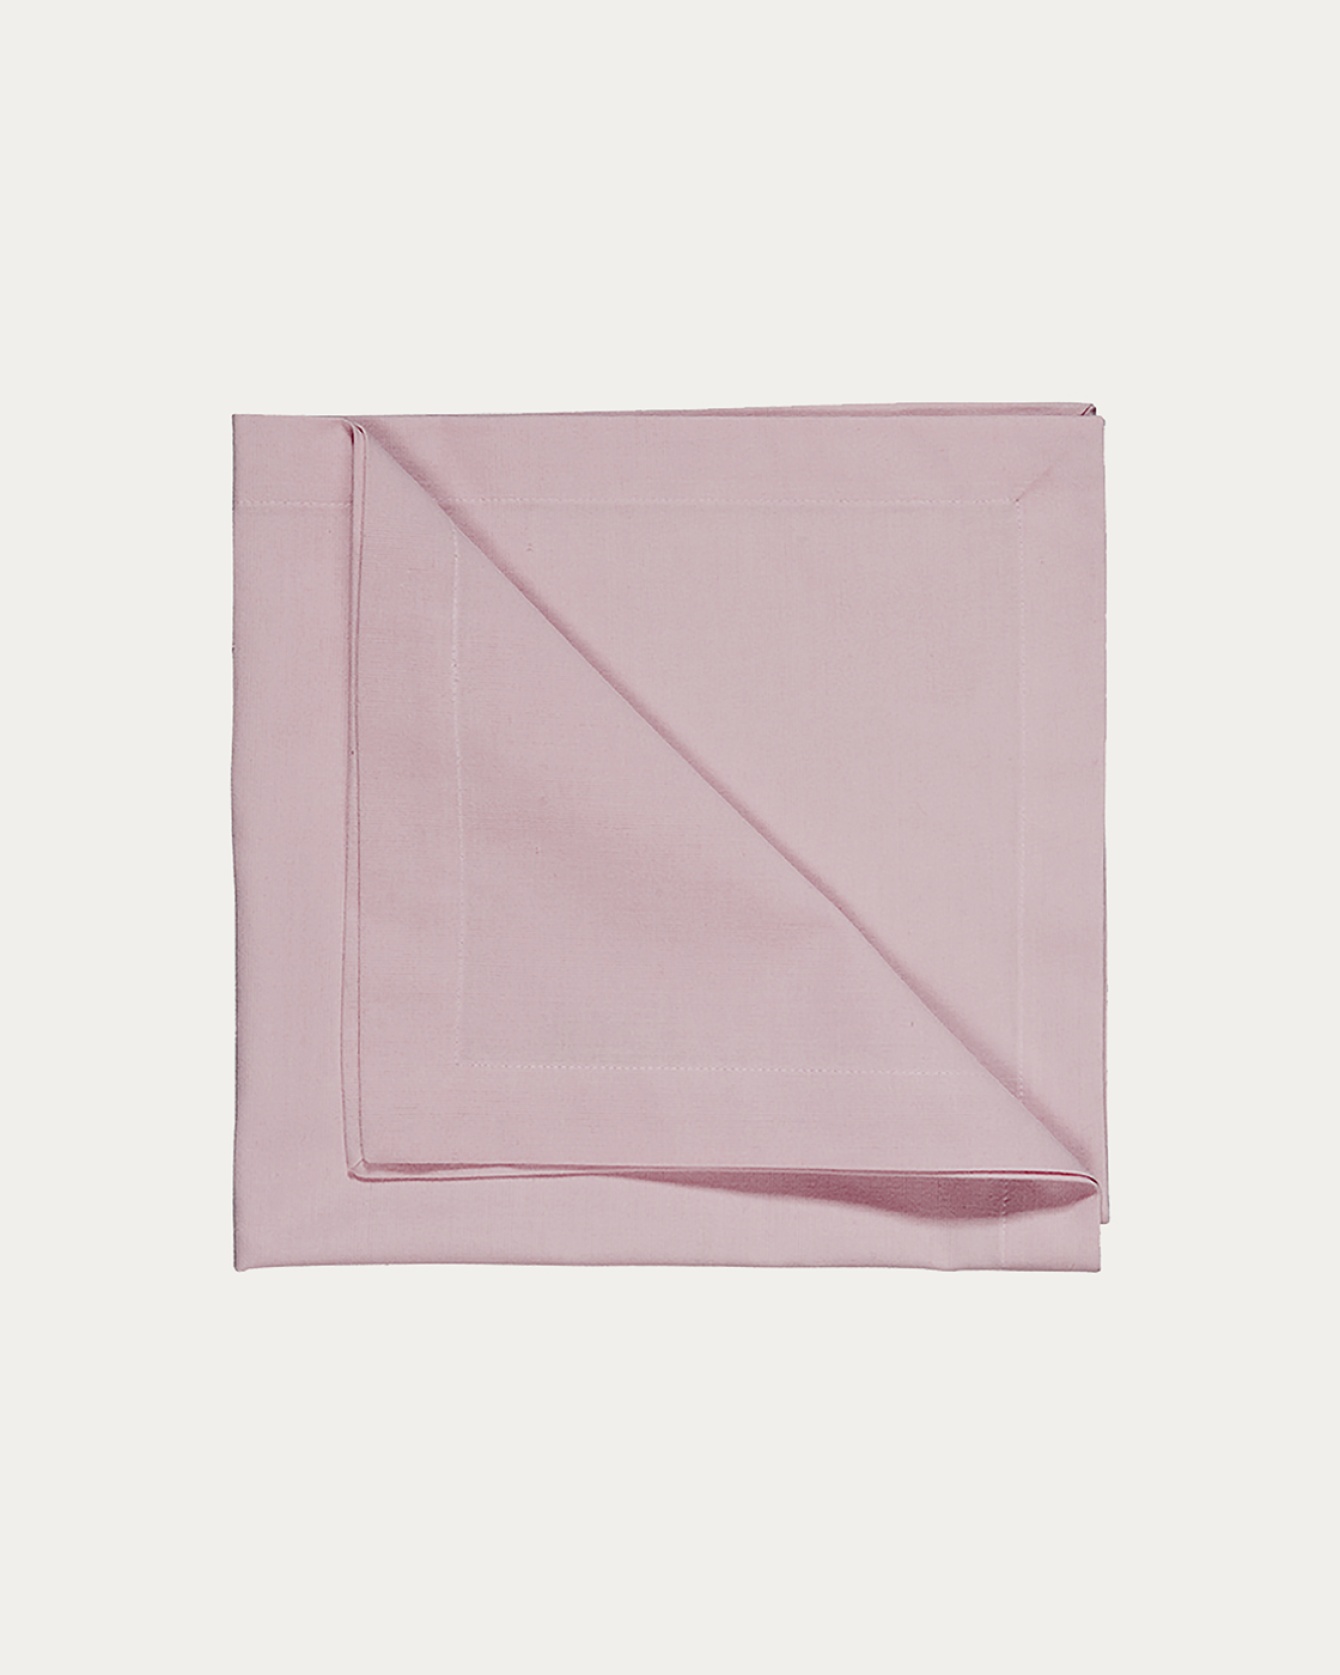 Produktbild ljusrosa ROBERT servett av mjuk bomull från LINUM DESIGN. Storlek 45x45 cm och säljs i 4 pack.